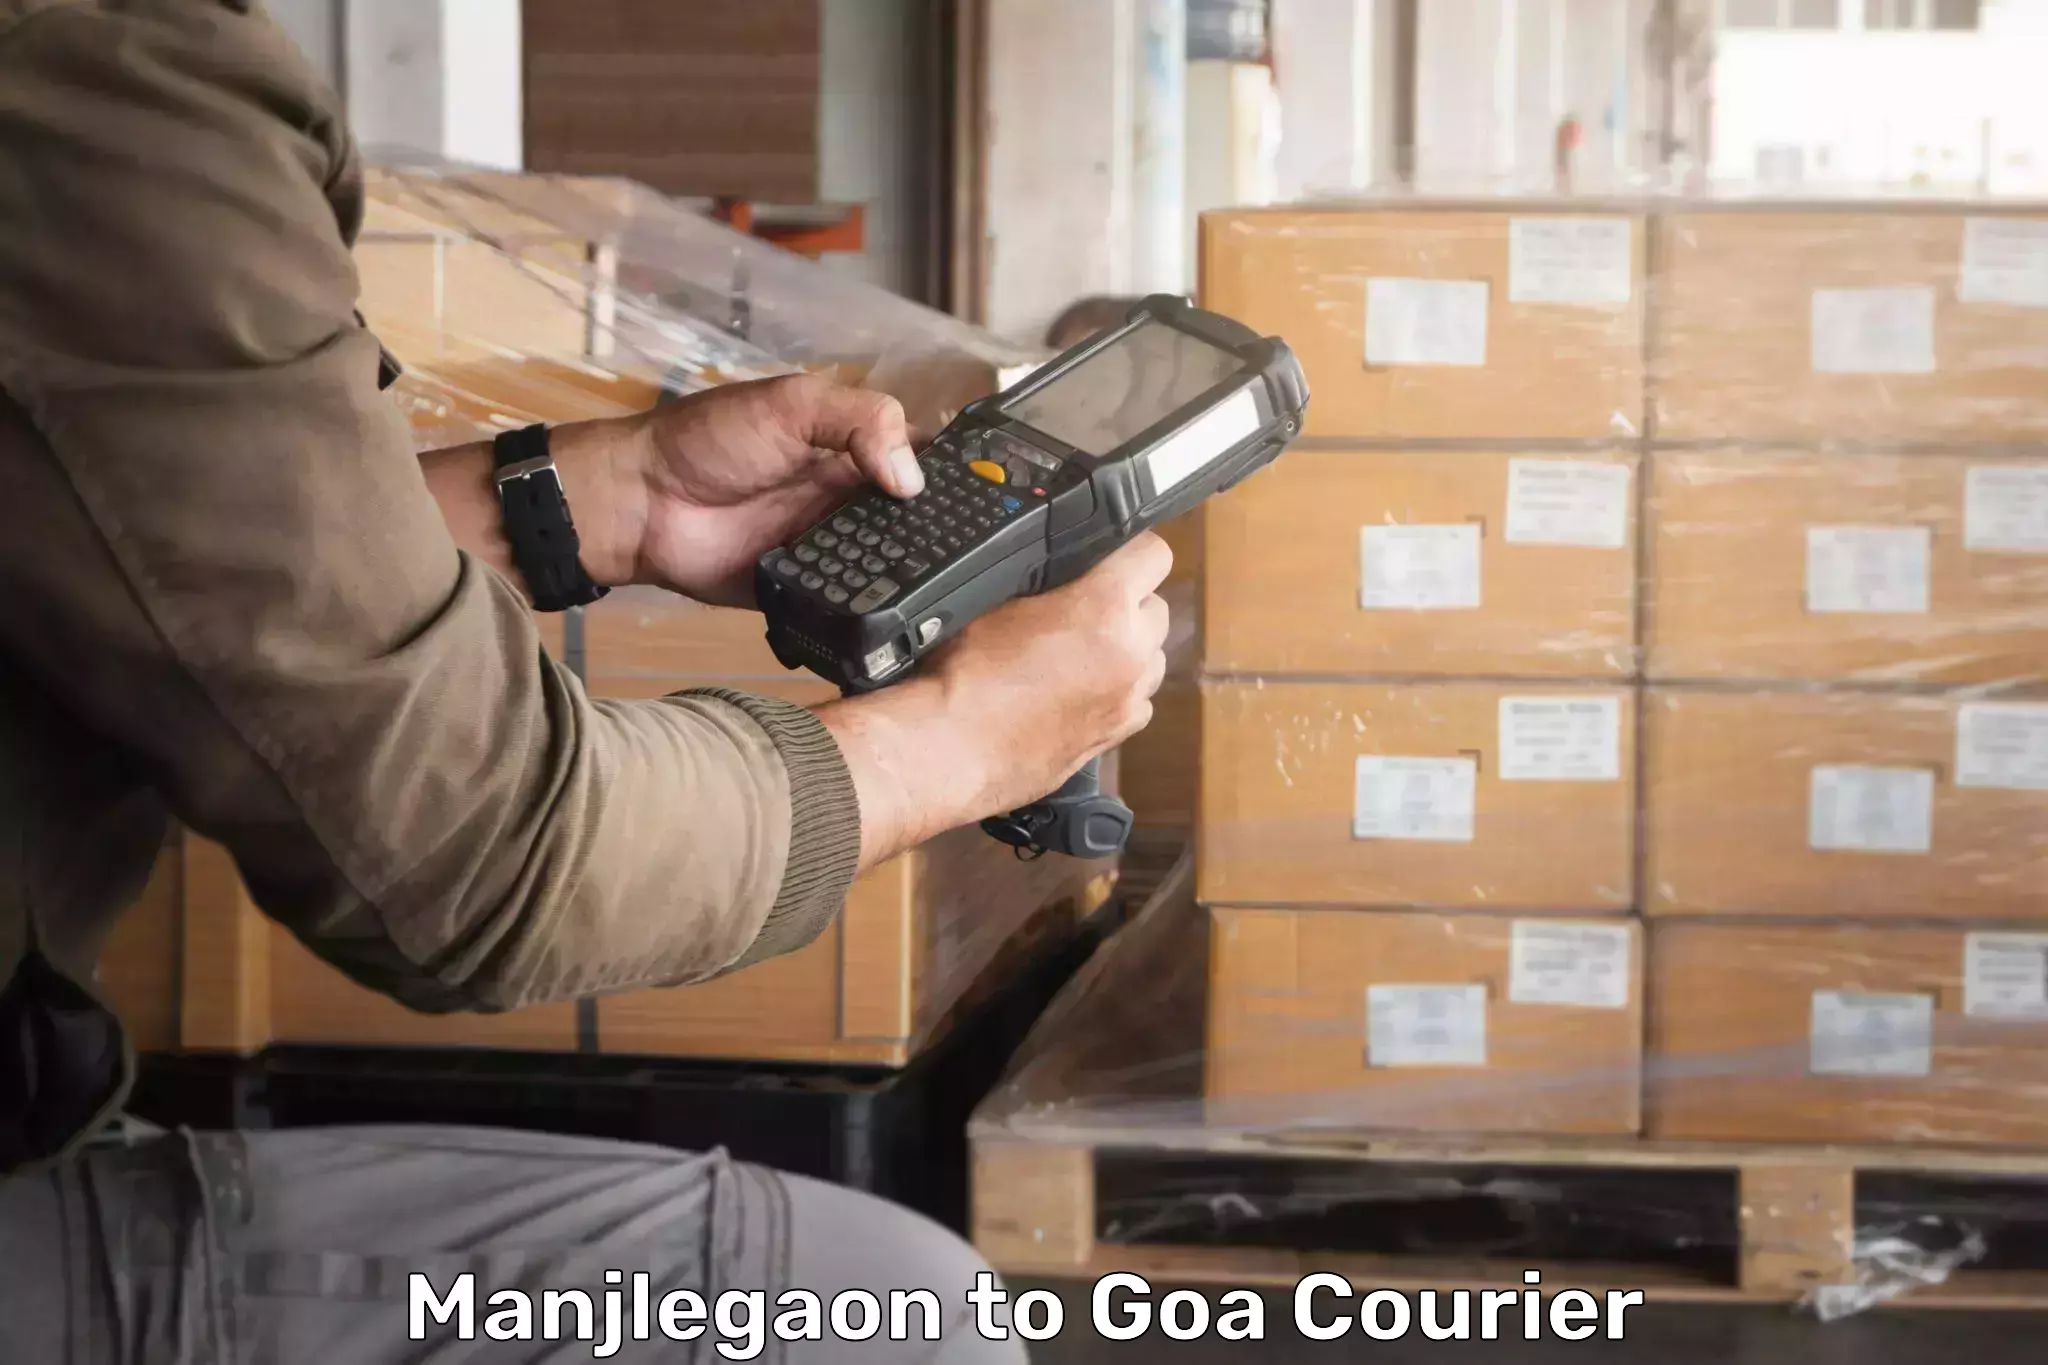 Courier tracking online Manjlegaon to Sanvordem